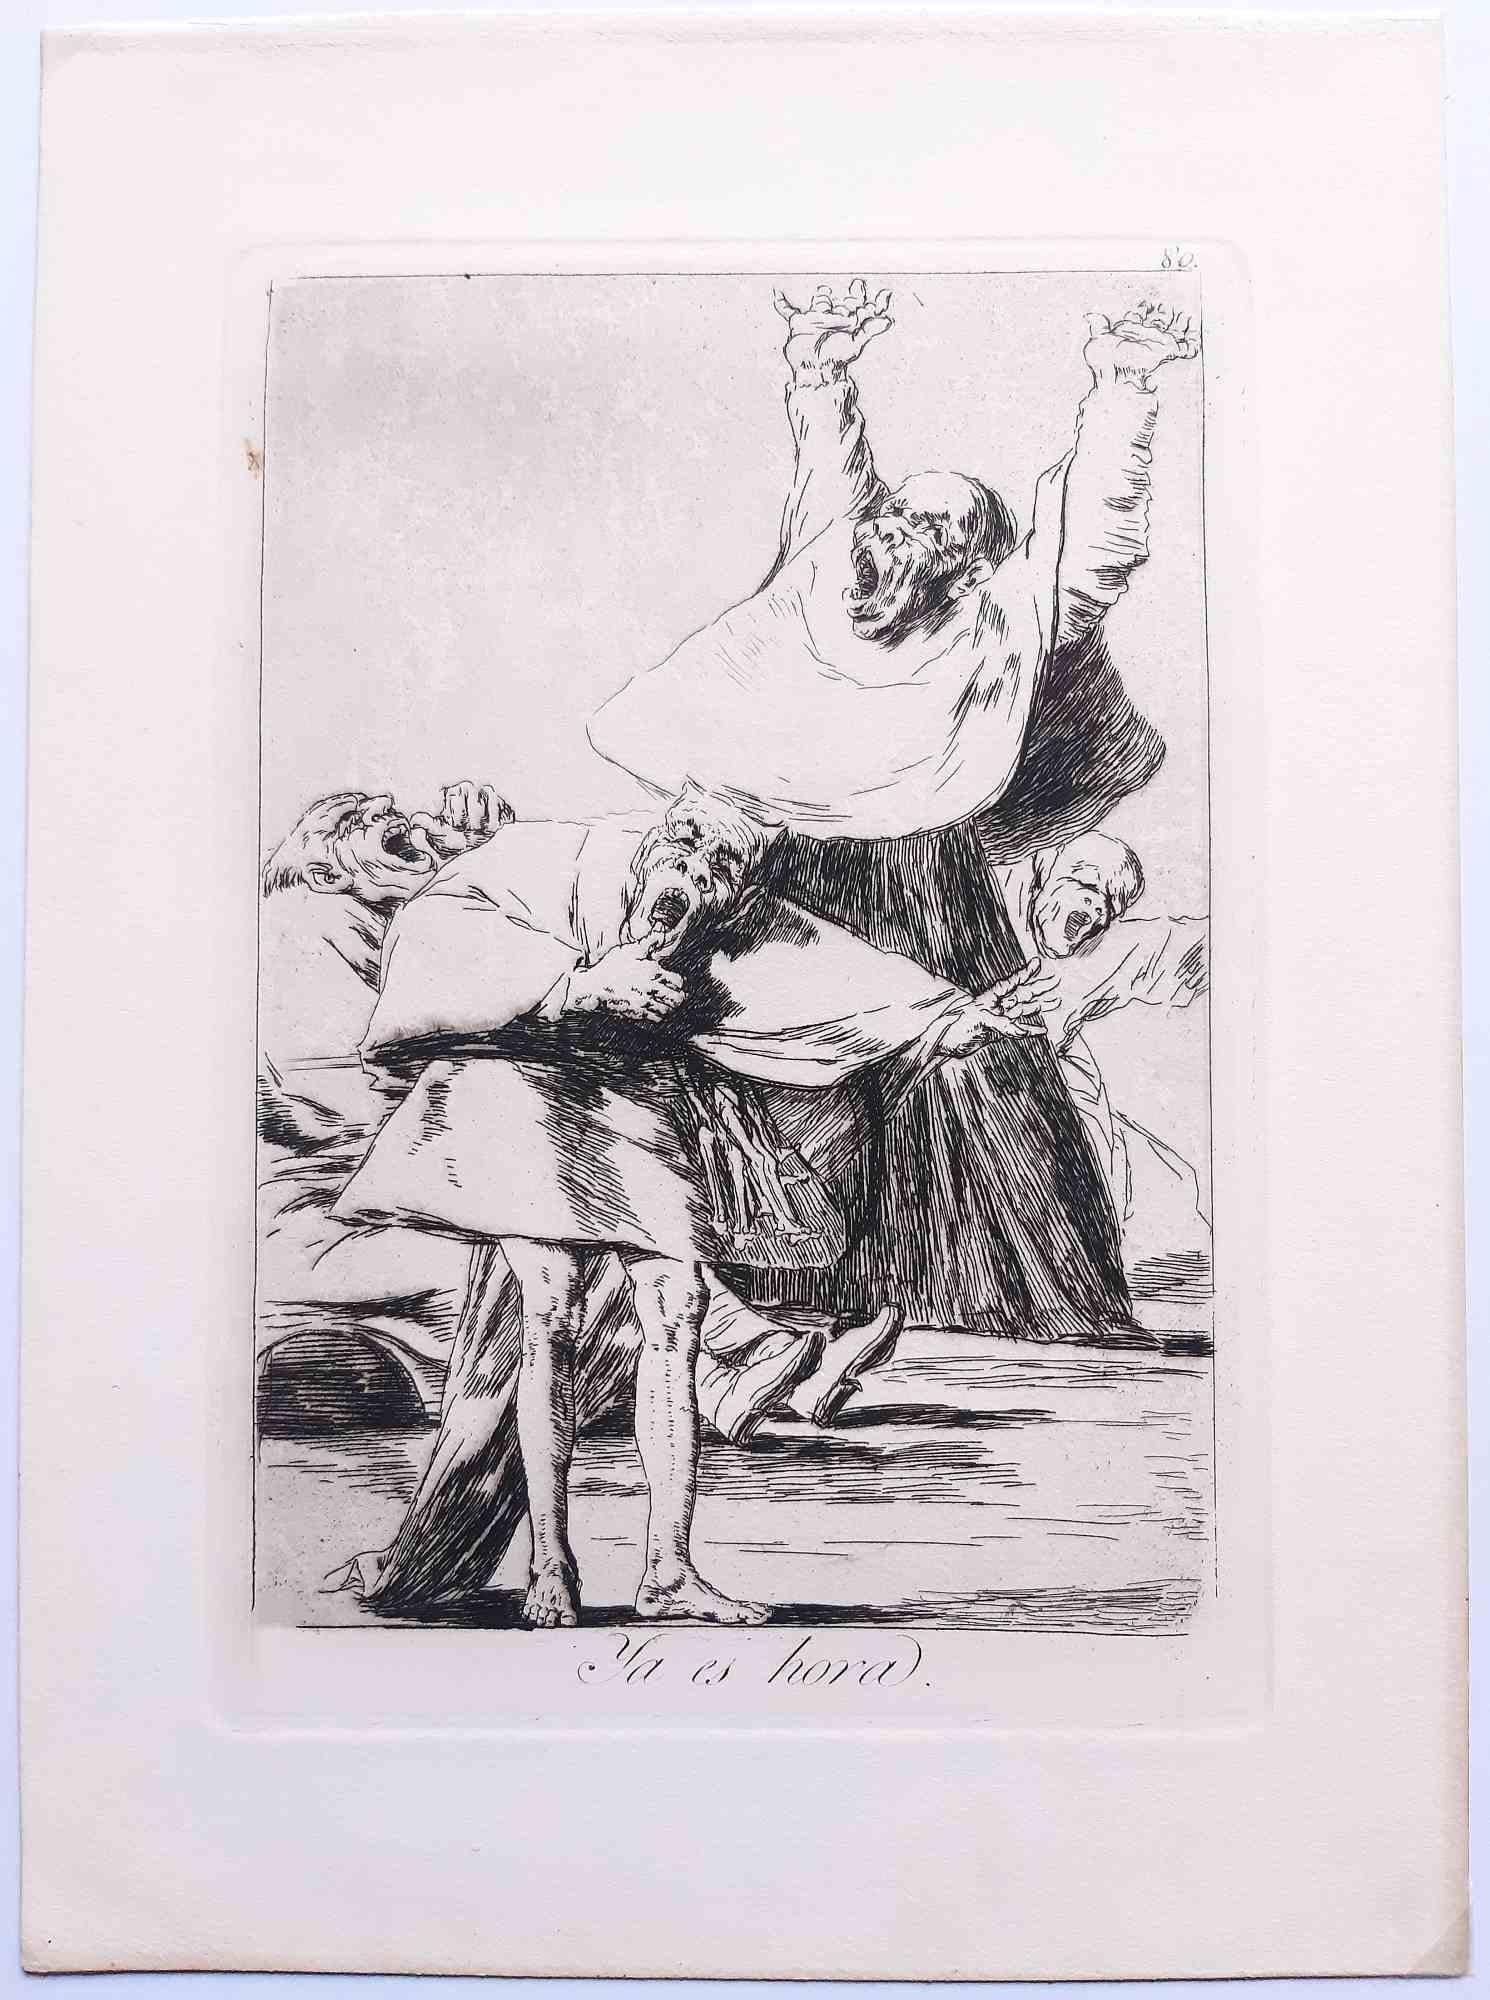 Ya es hora aus Los Caprichos ist ein Originalwerk des Künstlers Francisco Goya, das 1799 zum ersten Mal veröffentlicht wurde.

Radierung und Aquatinta auf Papier.

Die Radierung ist Teil der vierten Ausgabe von "Los Caprichos", die 1878 von der